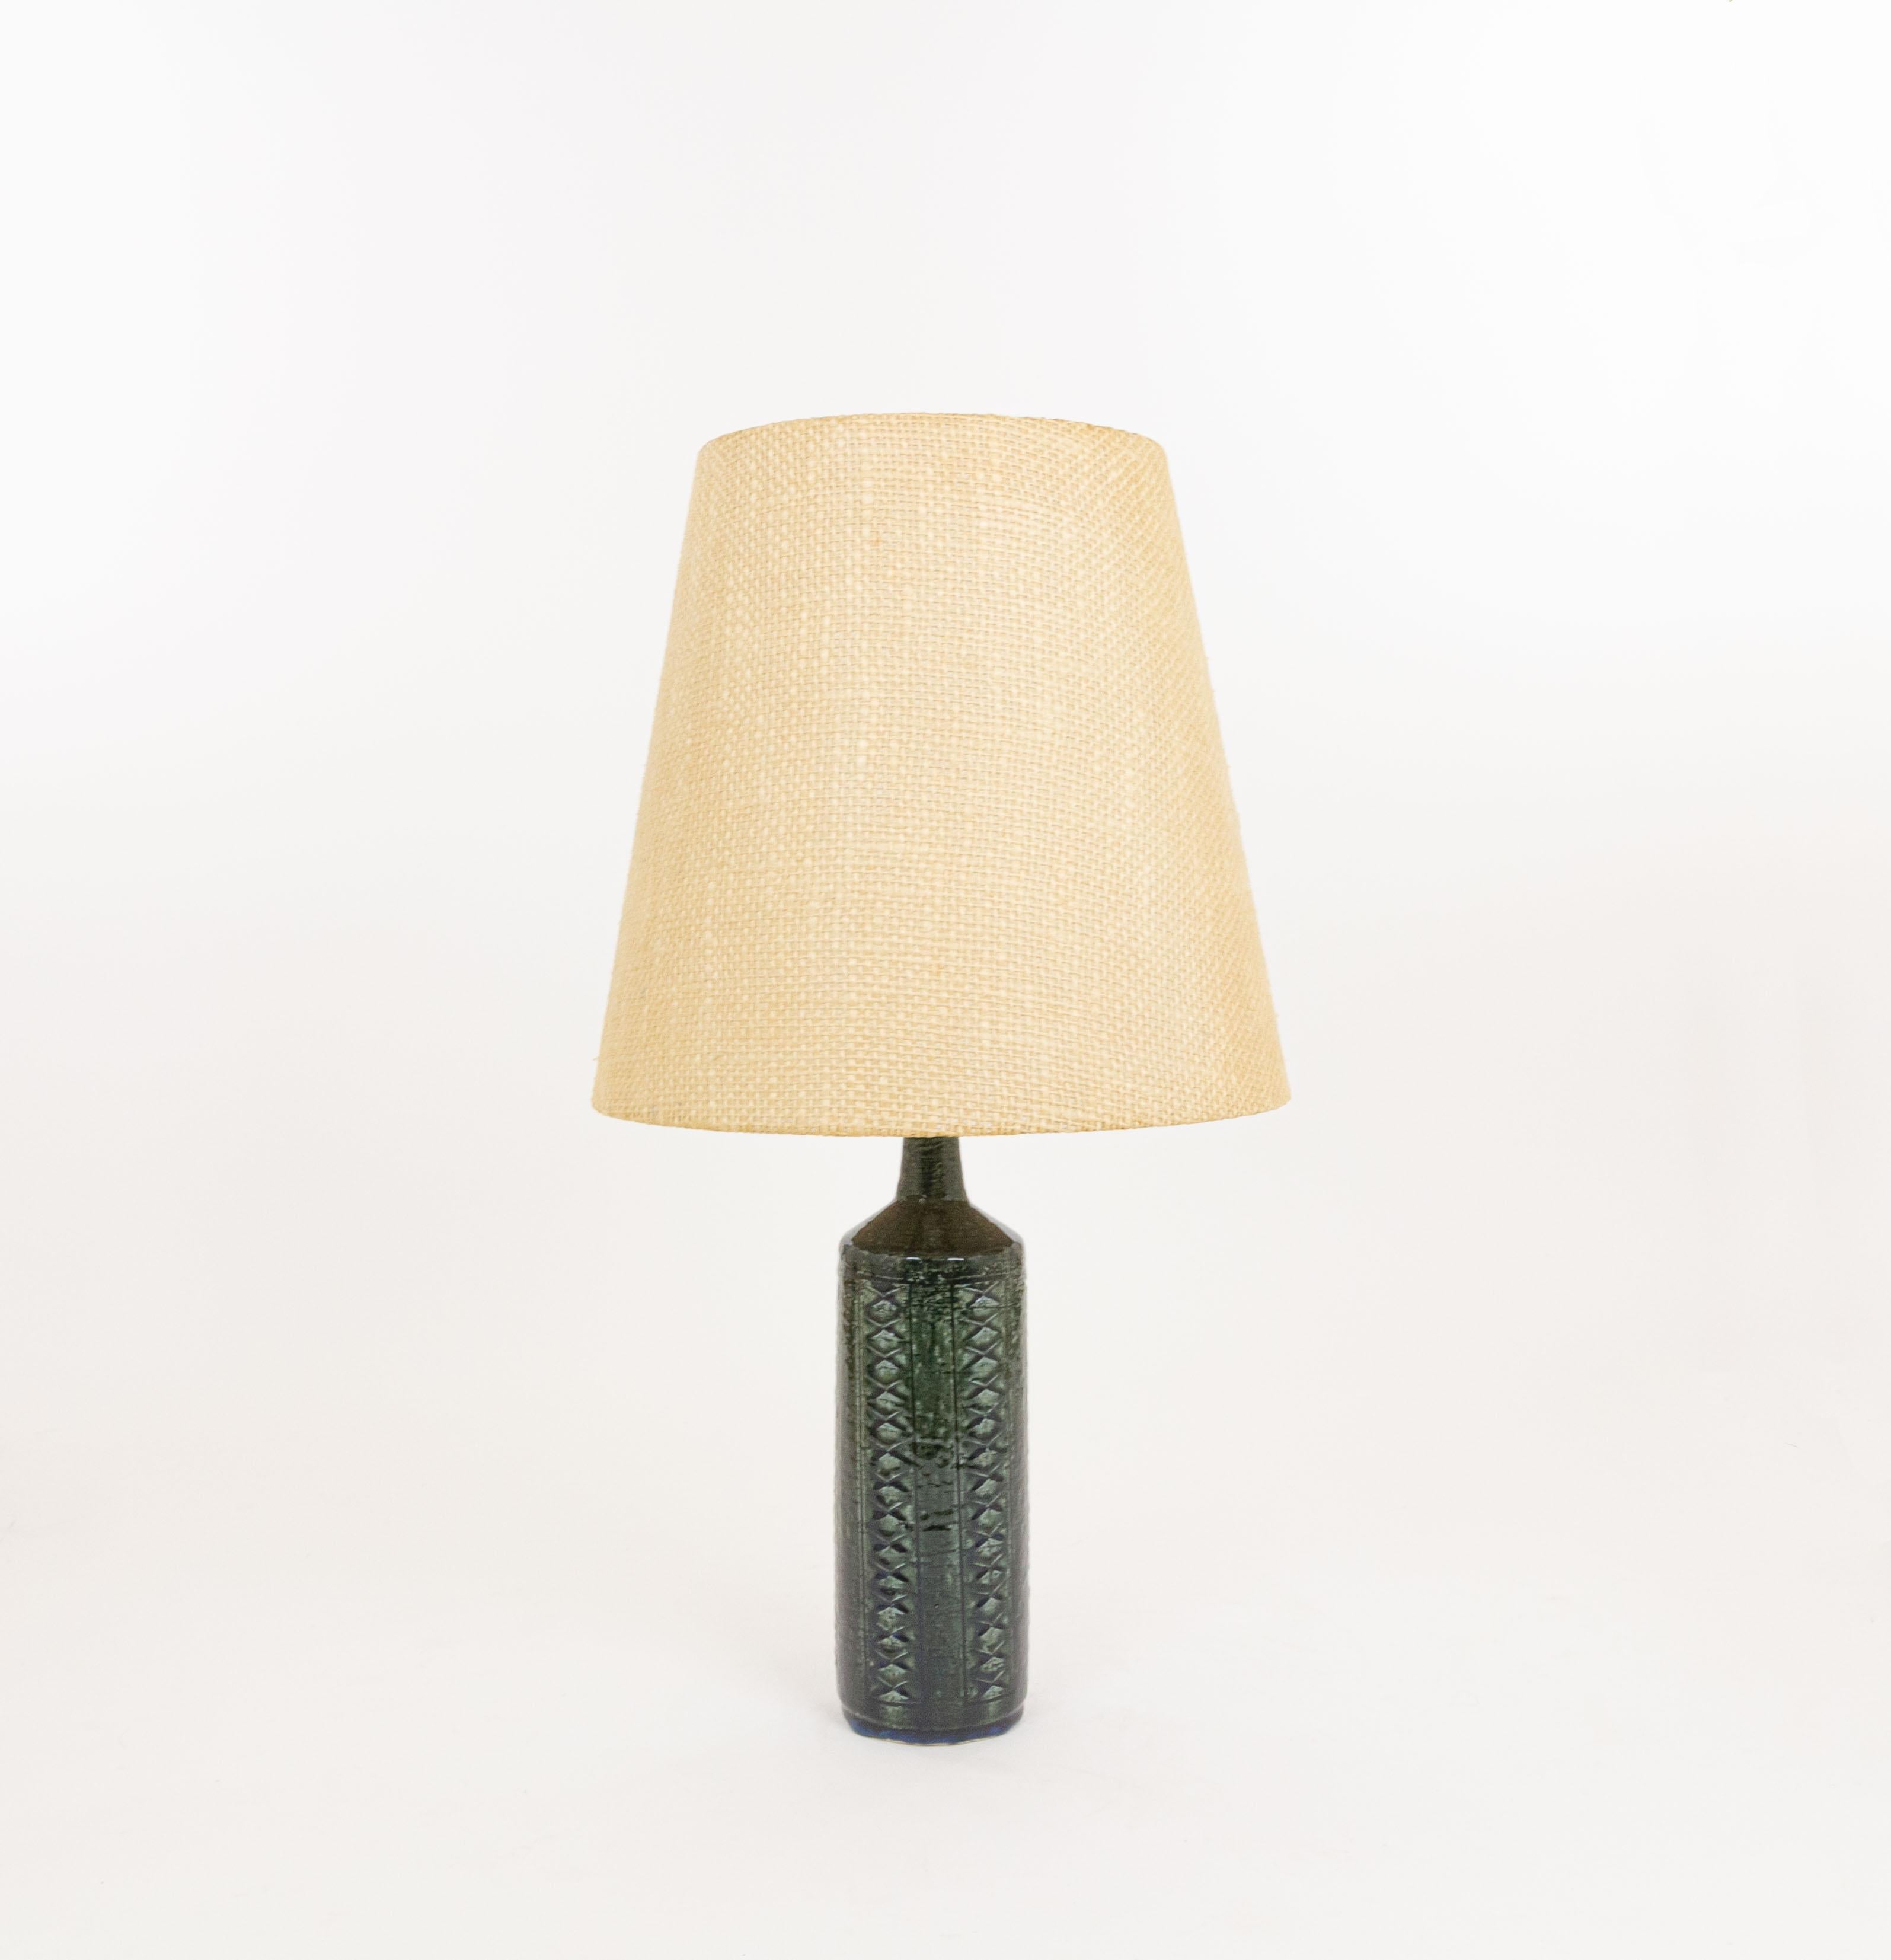 Lampe de table modèle DL/27 réalisée par Annelise et Per Linnemann-Schmidt pour Palshus dans les années 1960. La couleur de la base décorée à la main est vert bleu. Il présente des motifs impressionnés.

La lampe est livrée avec son support